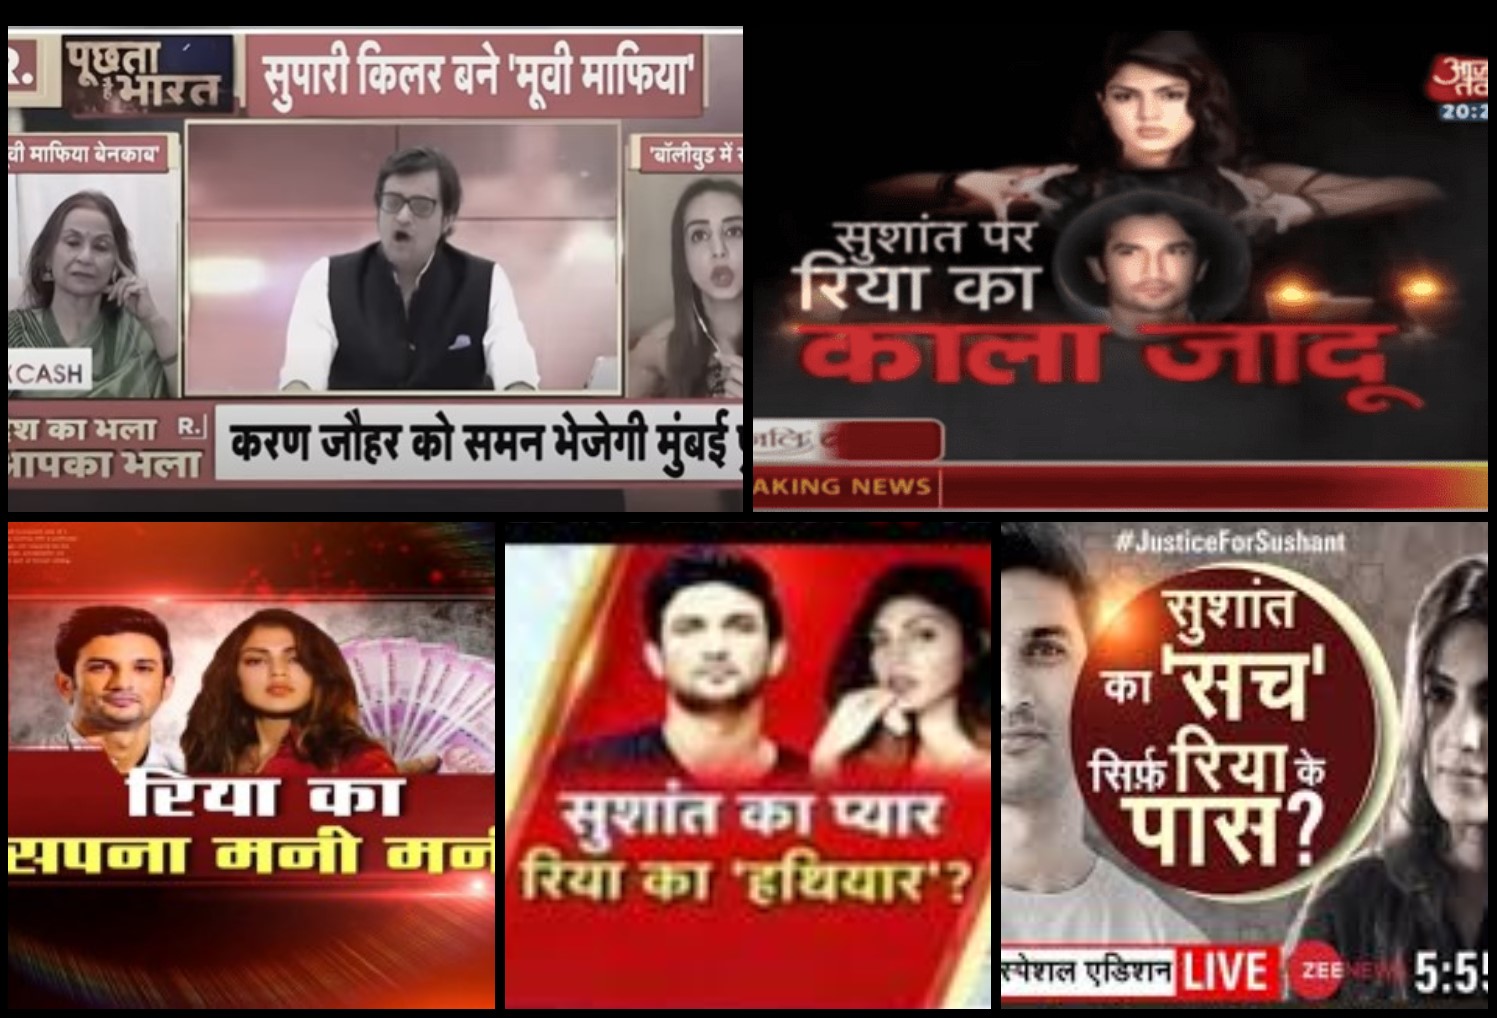 سشانت معاملے کو لےکر مختلف ٹی وی چینلوں کی کوریج (بہ شکریہ: متعلقہ چینل/ویڈیوگریب)